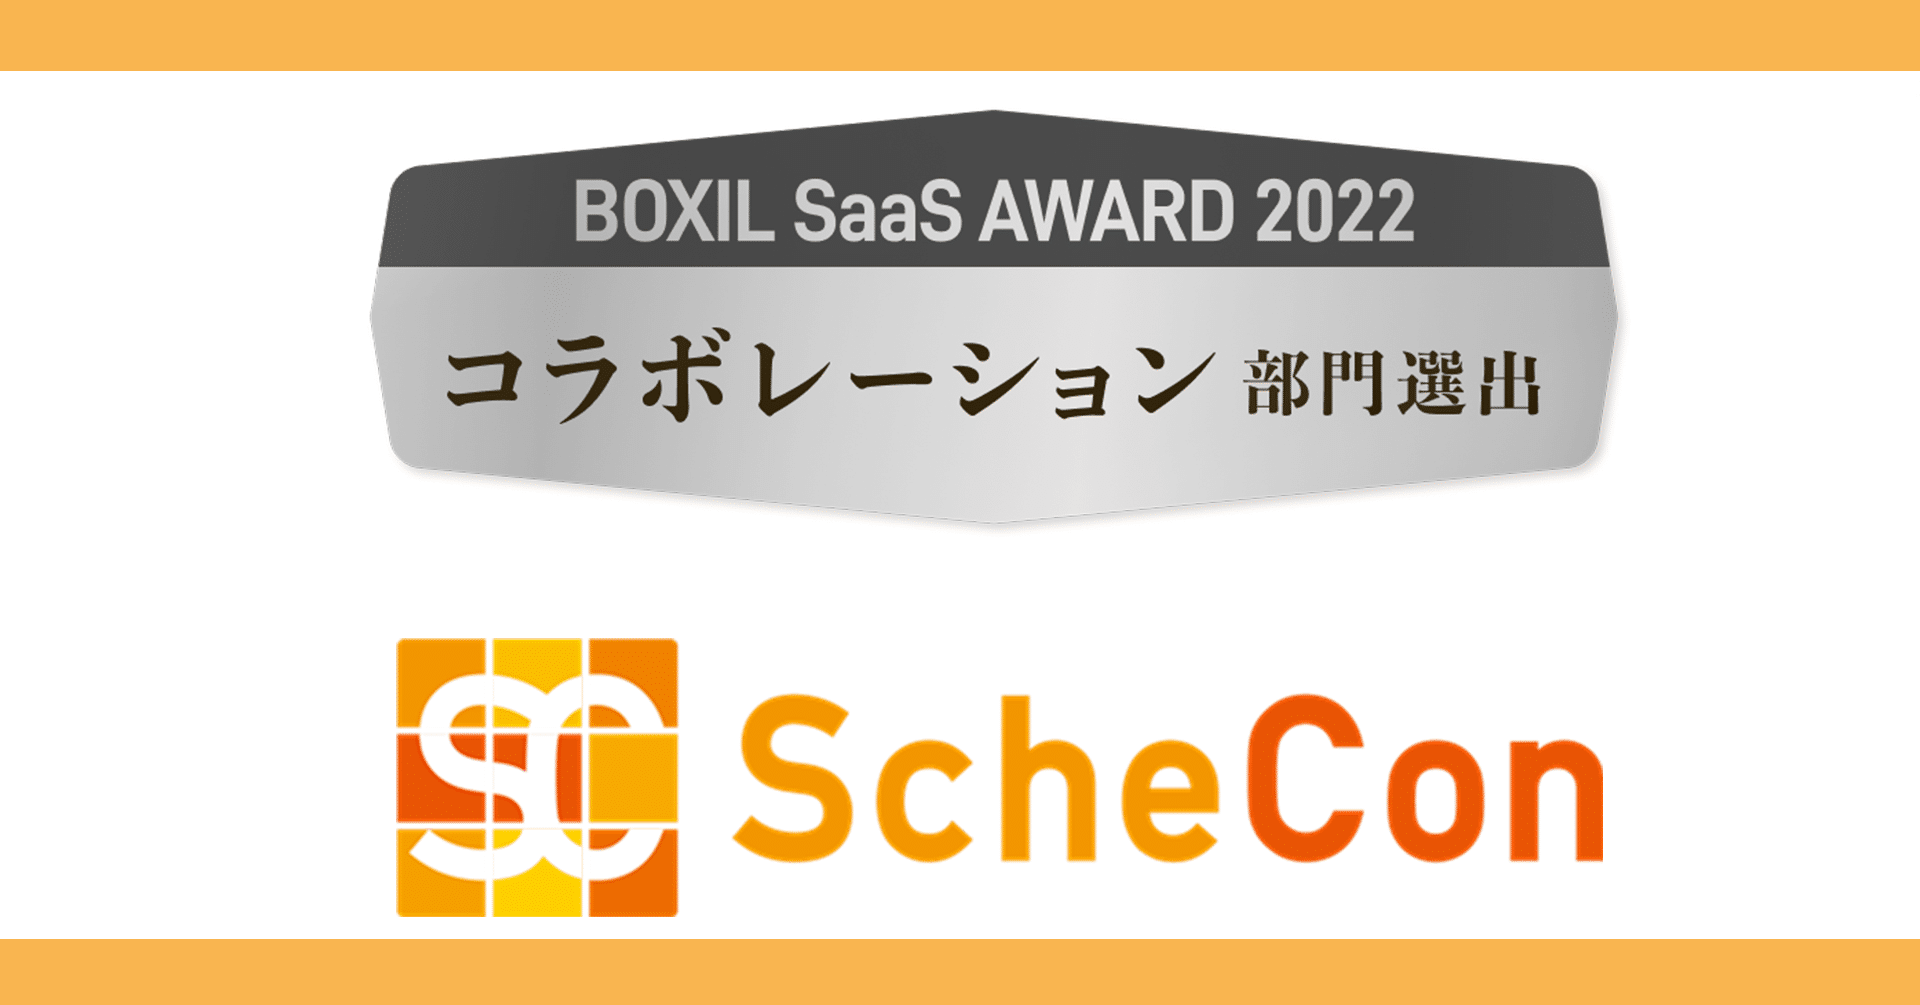 『Schecon』が「BOXIL SaaS AWARD 2022」にて 『コラボレーション部門賞』を受賞しました！